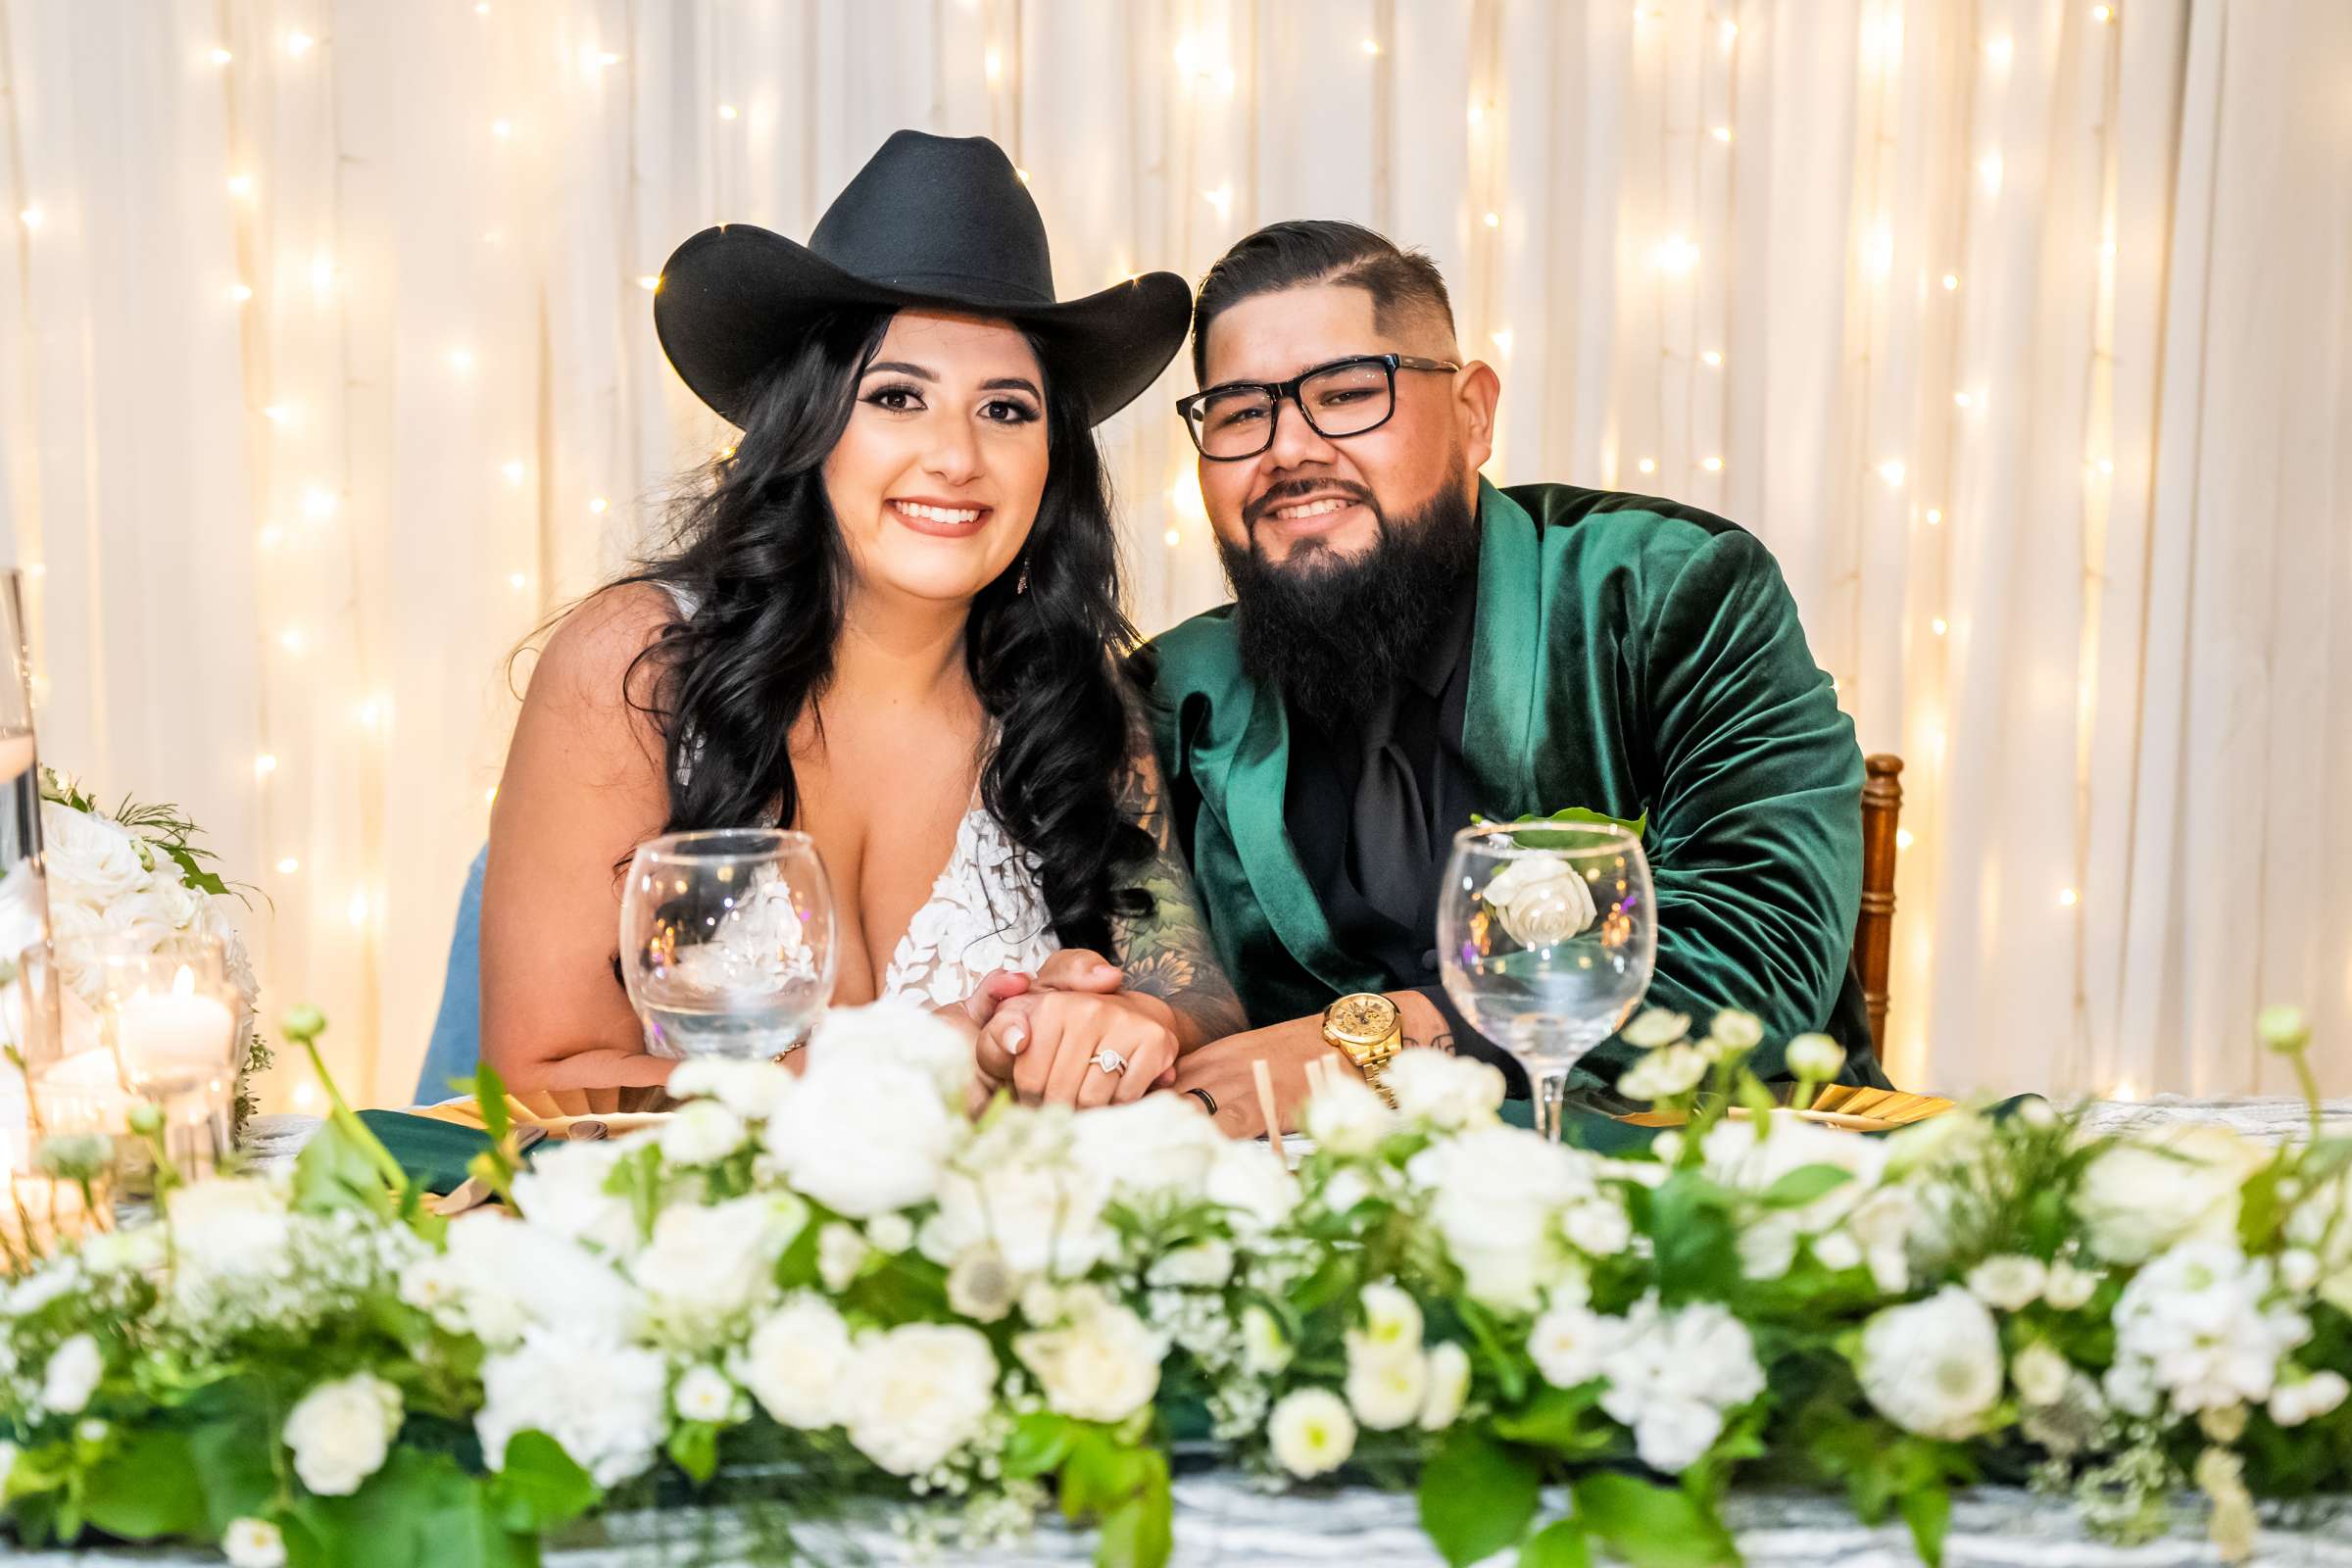 La Hacienda Wedding, Ashley and Alvaro Wedding Photo #17 by True Photography